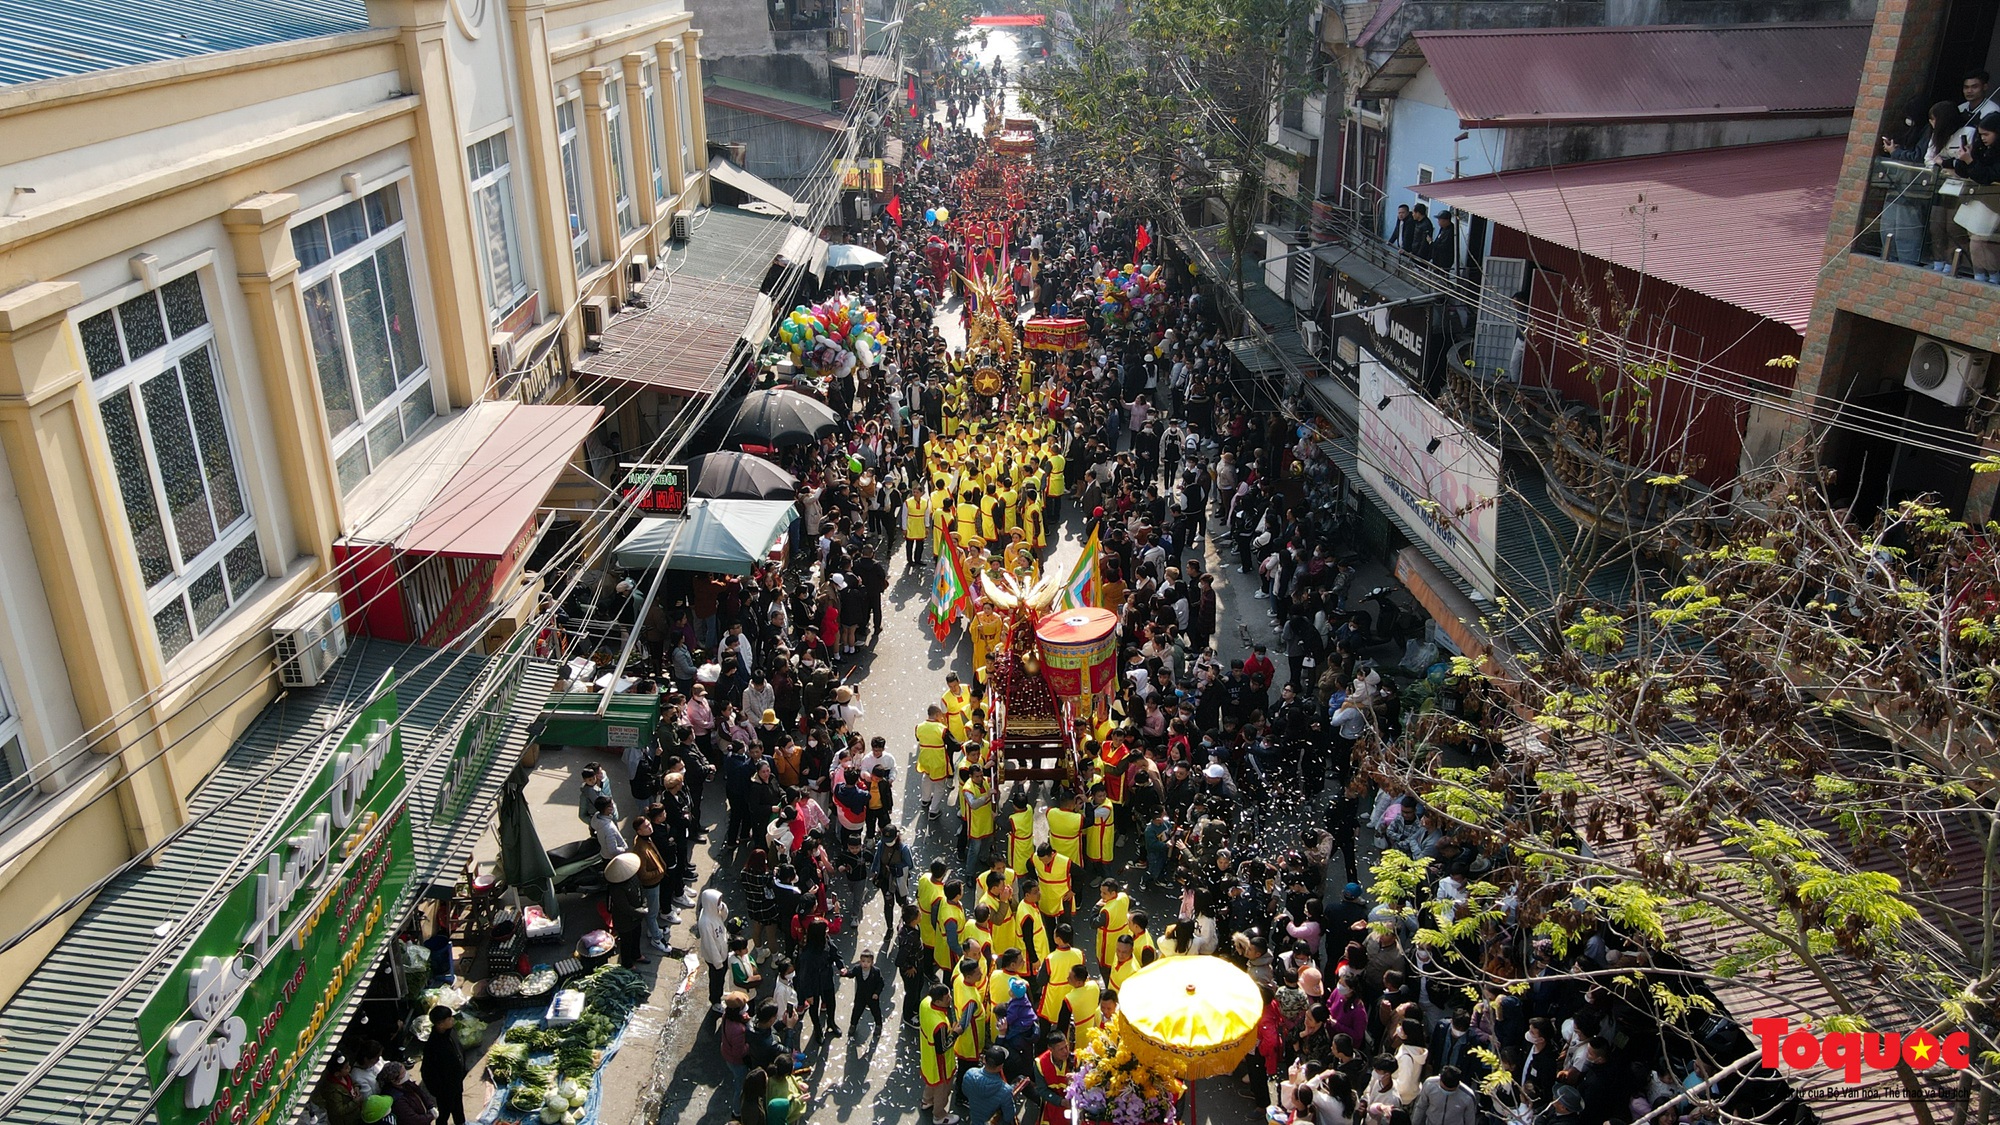 Tưng bừng, rộn ràng lễ hội rước pháo khổng lồ ở làng Đồng Kỵ - Ảnh 9.